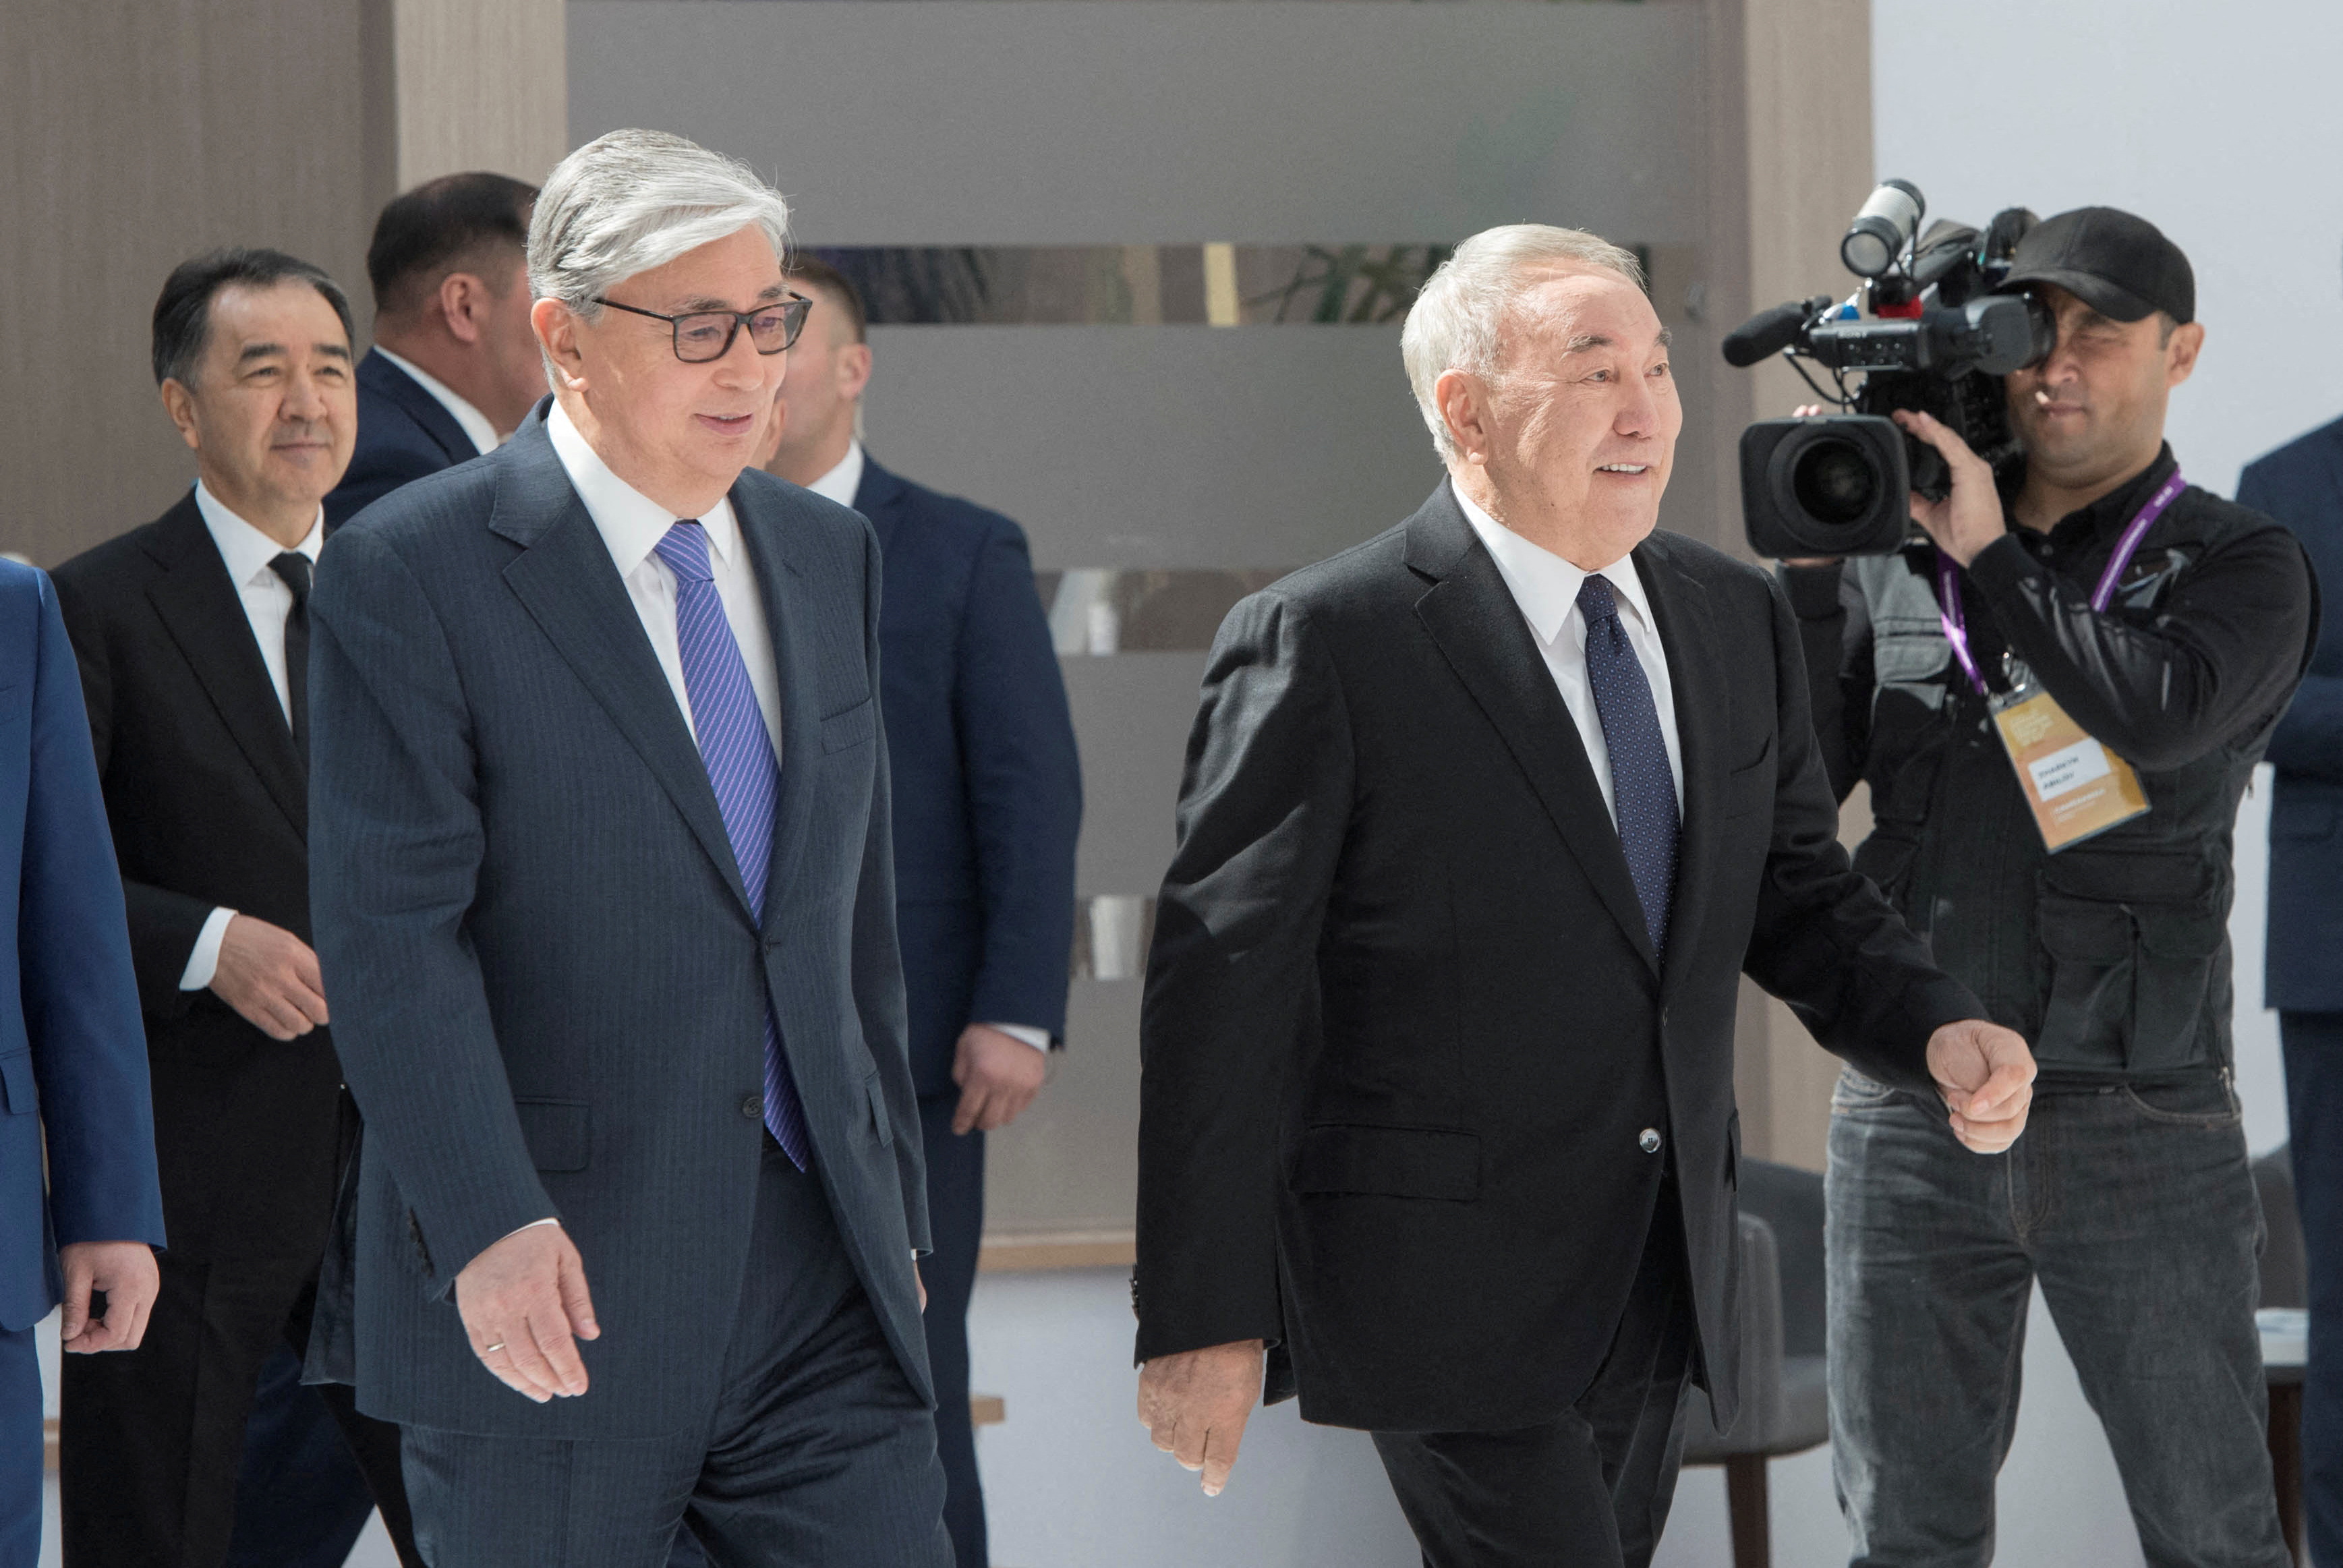 Kassym-Jomart Tokayev and Nursultan Nazarbayev attend the Astana Economic Forum in Nur-Sultan